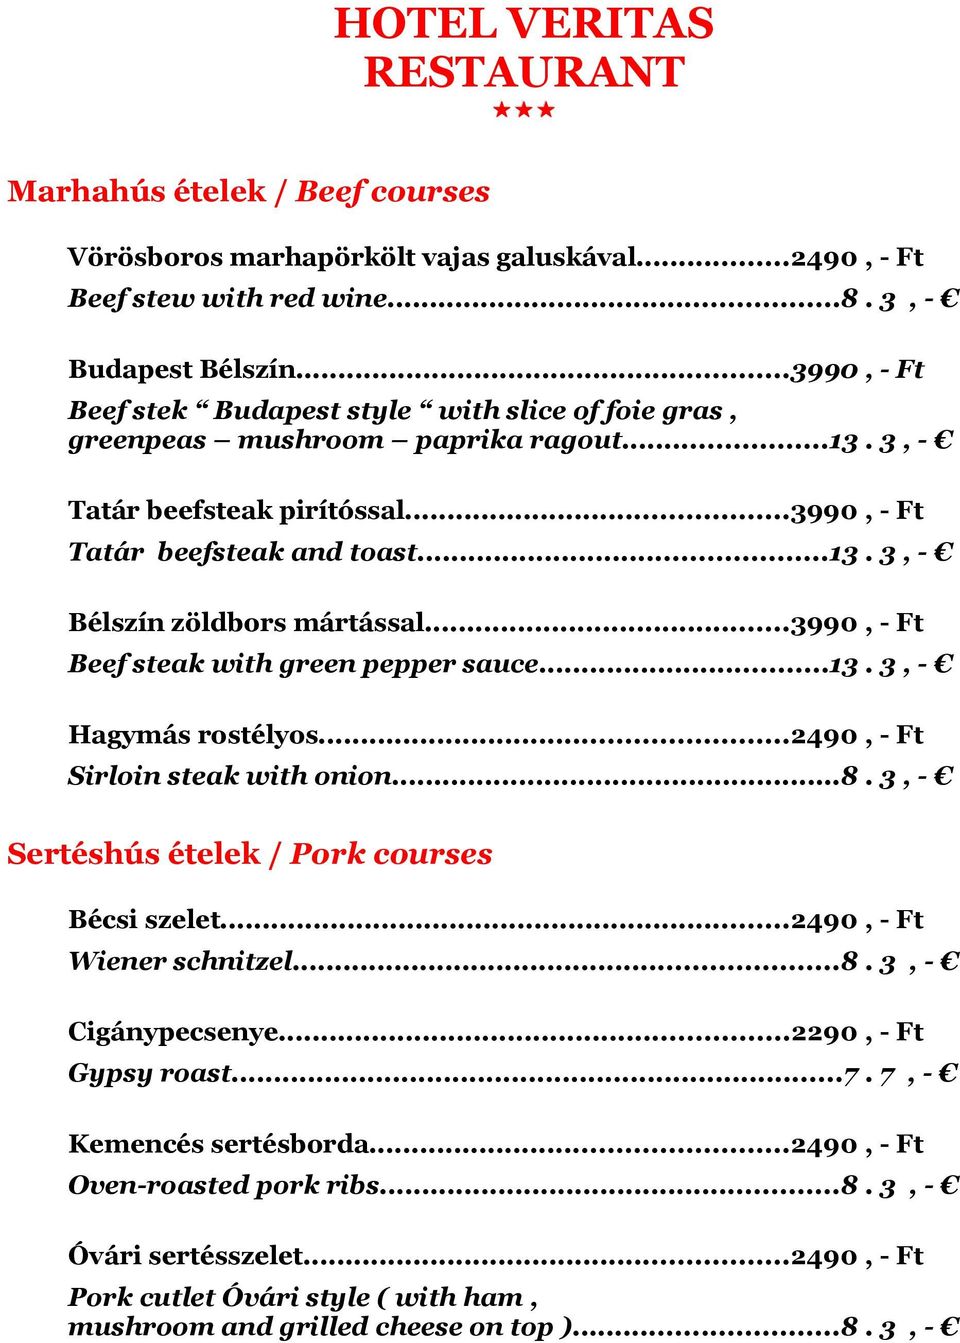 ..3990, - Ft Beef steak with green pepper sauce...13. 3, - Hagymás rostélyos...2490, - Ft Sirloin steak with onion...8. 3, - Sertéshús ételek / Pork courses Bécsi szelet...2490, - Ft Wiener schnitzel.